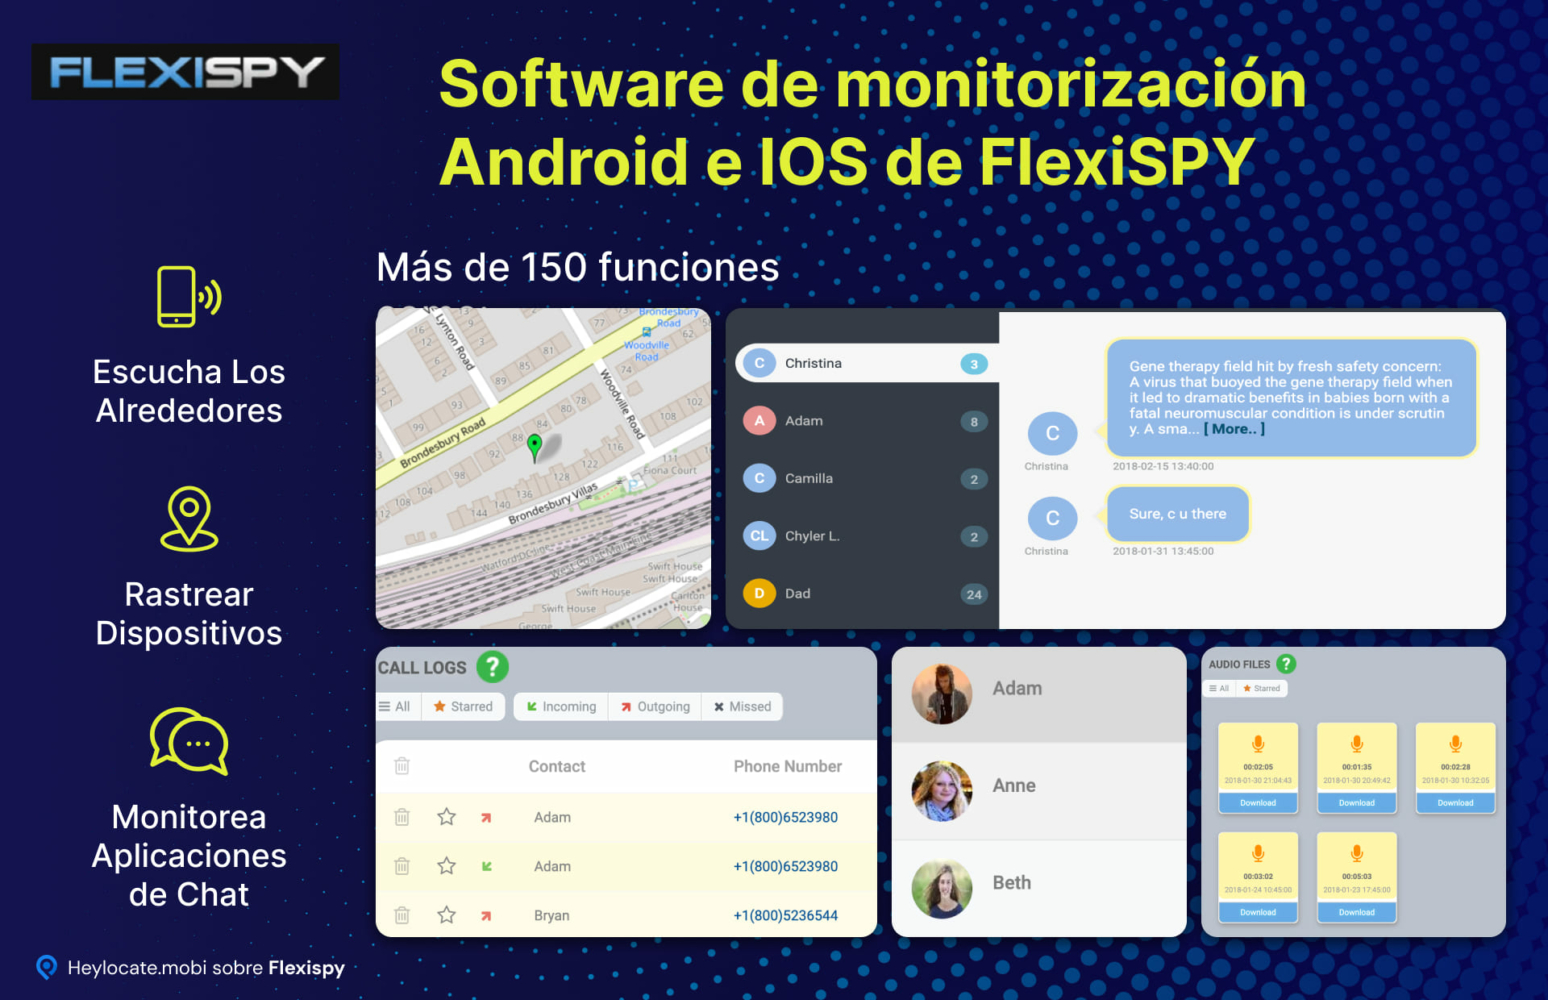 Una visión general de las funciones de monitorización de FlexiSPY para dispositivos Android e iOS, destacando capacidades como escuchar el entorno, rastrear la ubicación del dispositivo y monitorizar varias aplicaciones de chat, con ejemplos visuales de la interfaz del software.